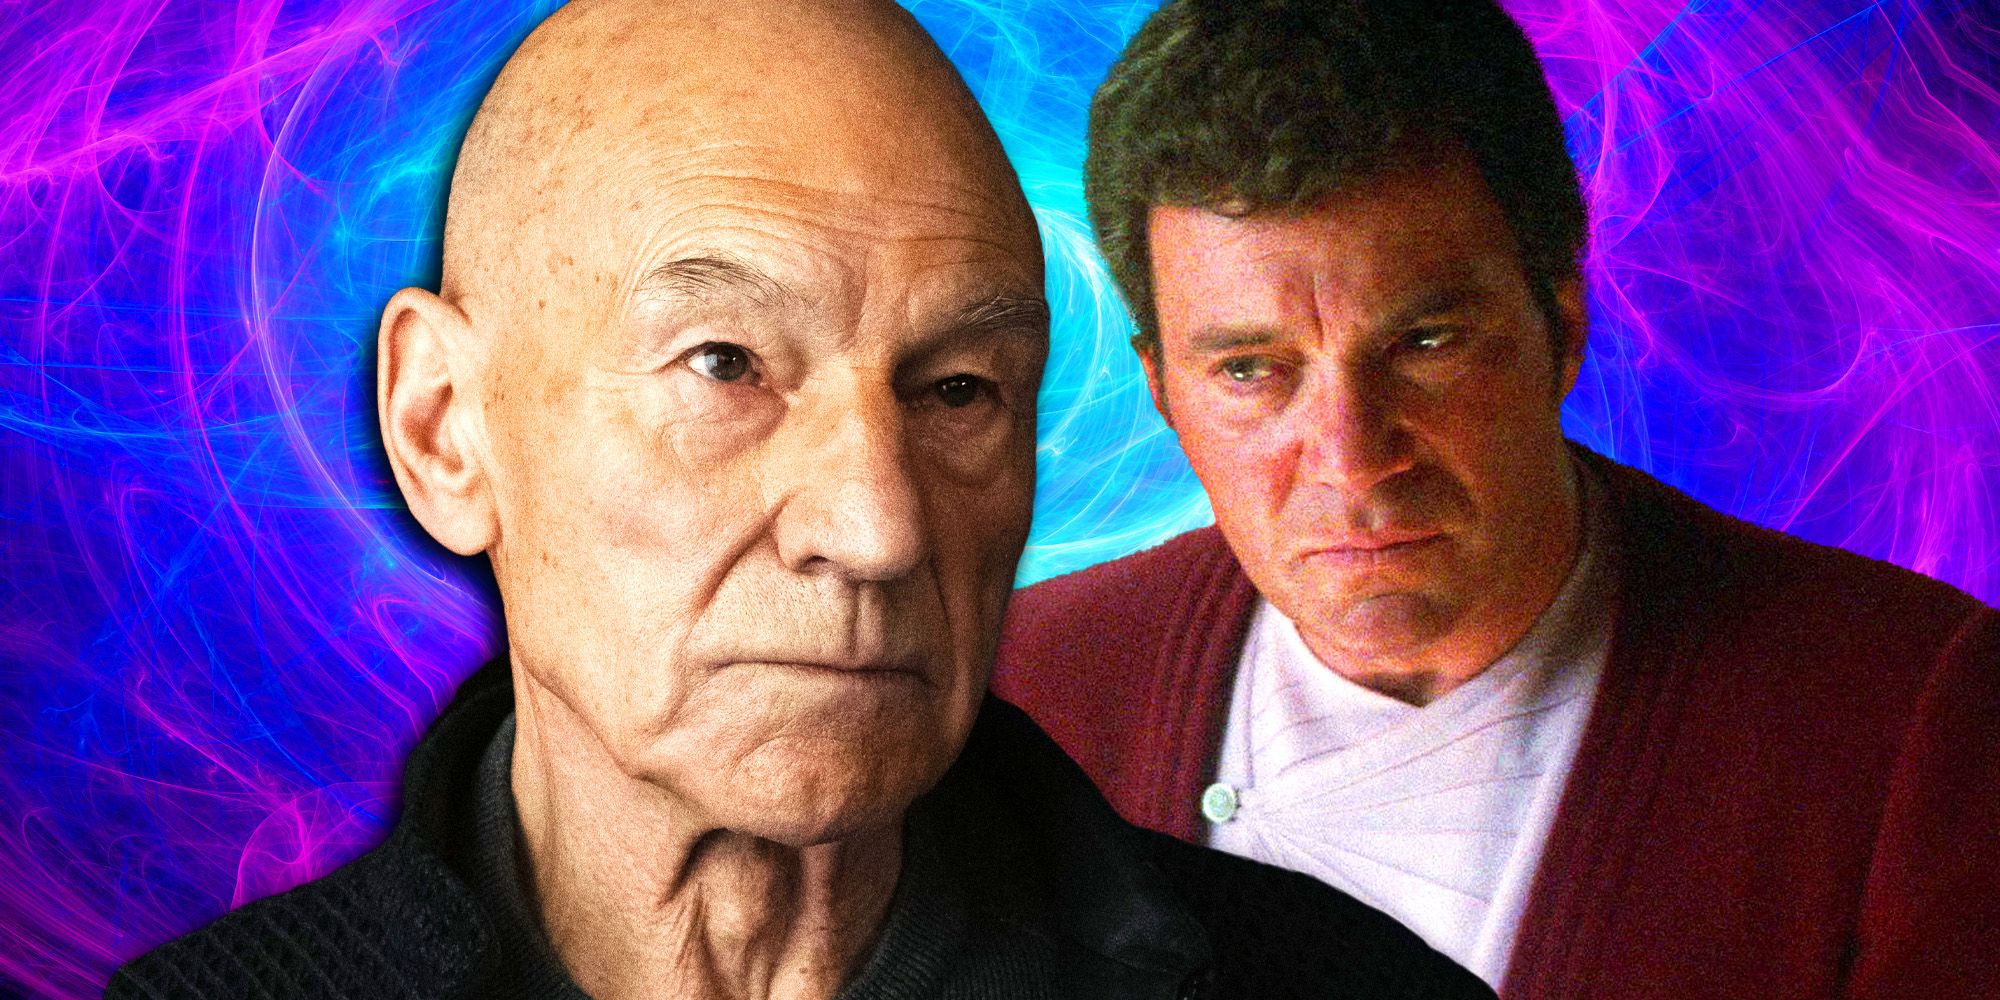 Admiral Picard in Star Trek- Picard season 3 and Admiral Kirk In Star Trek IV